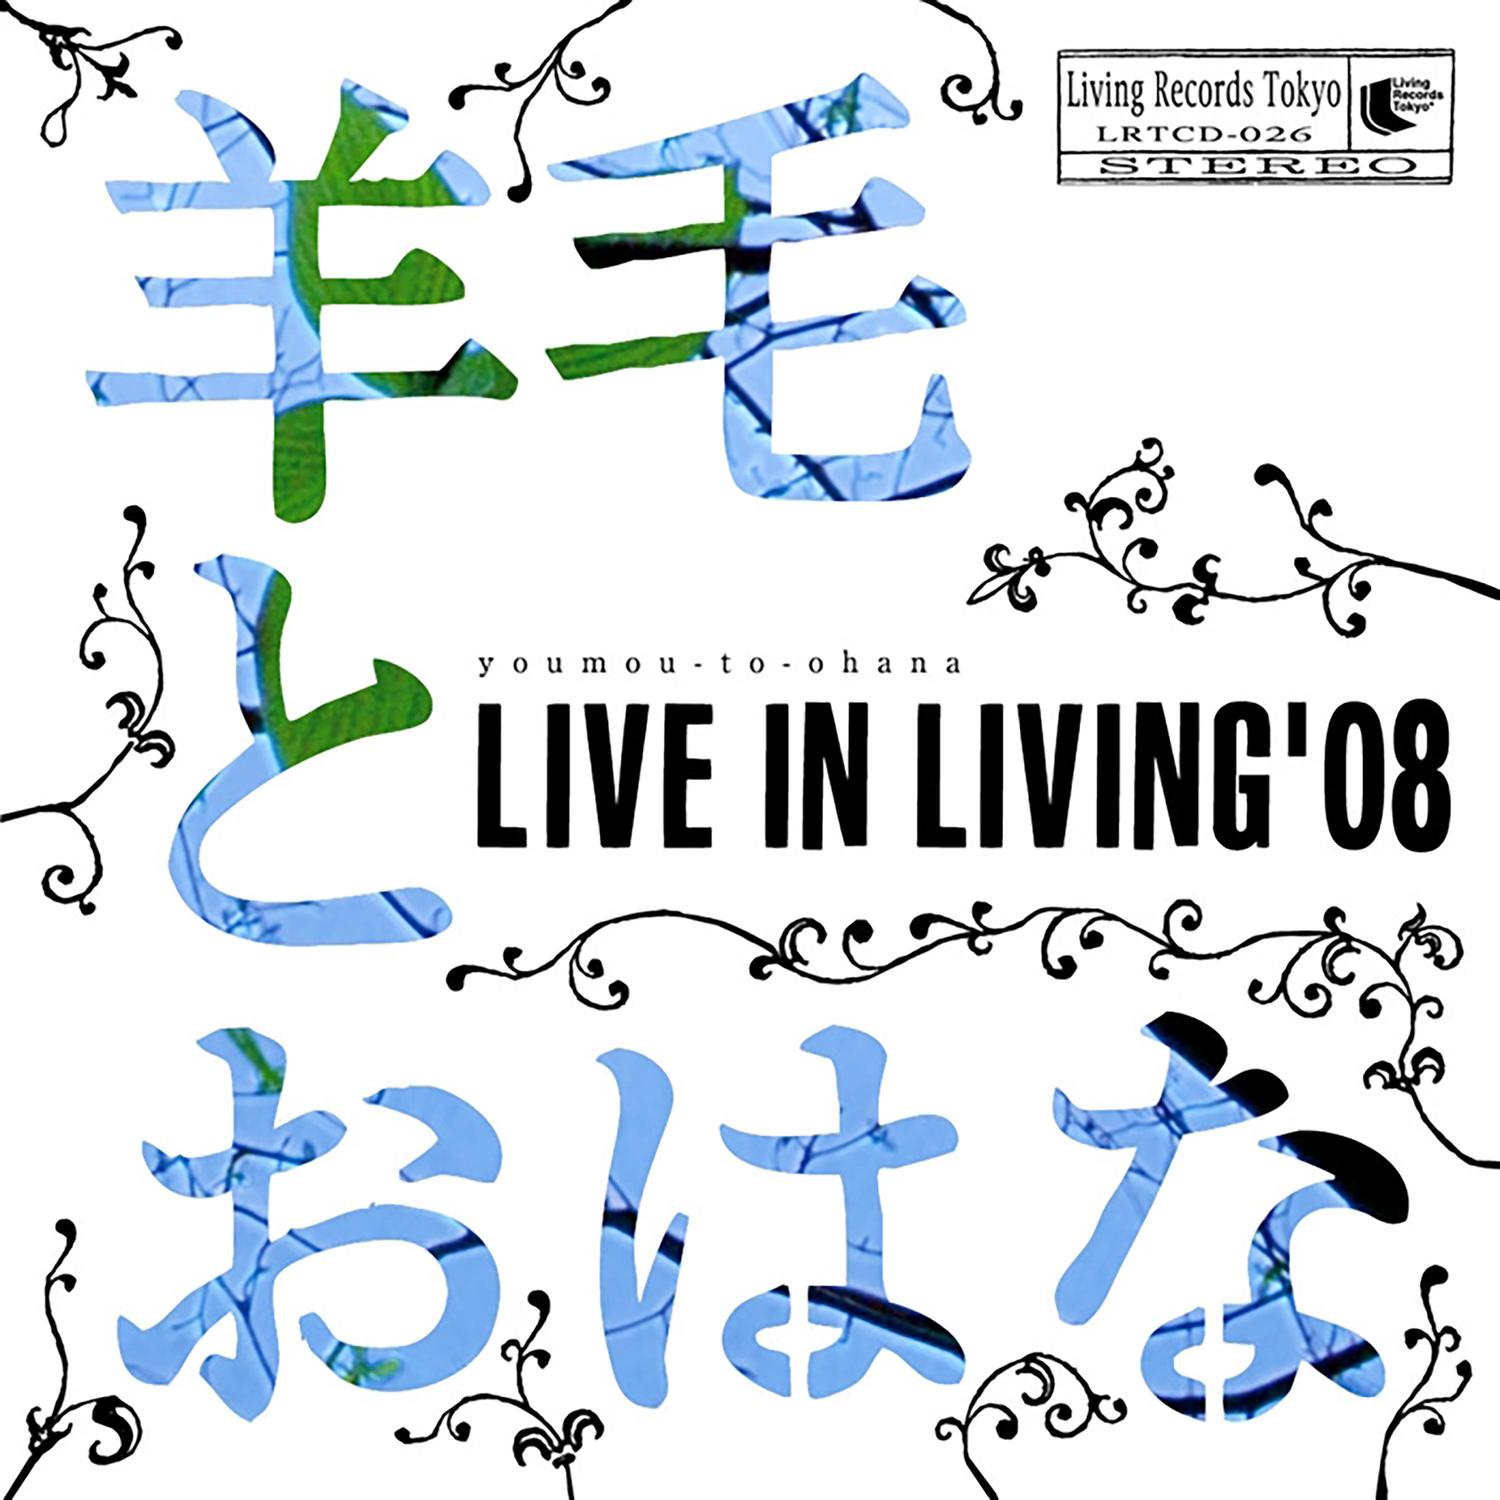 ナチュラル歌词 歌手羊毛とおはな-专辑LIVE IN LIVING '08-单曲《ナチュラル》LRC歌词下载